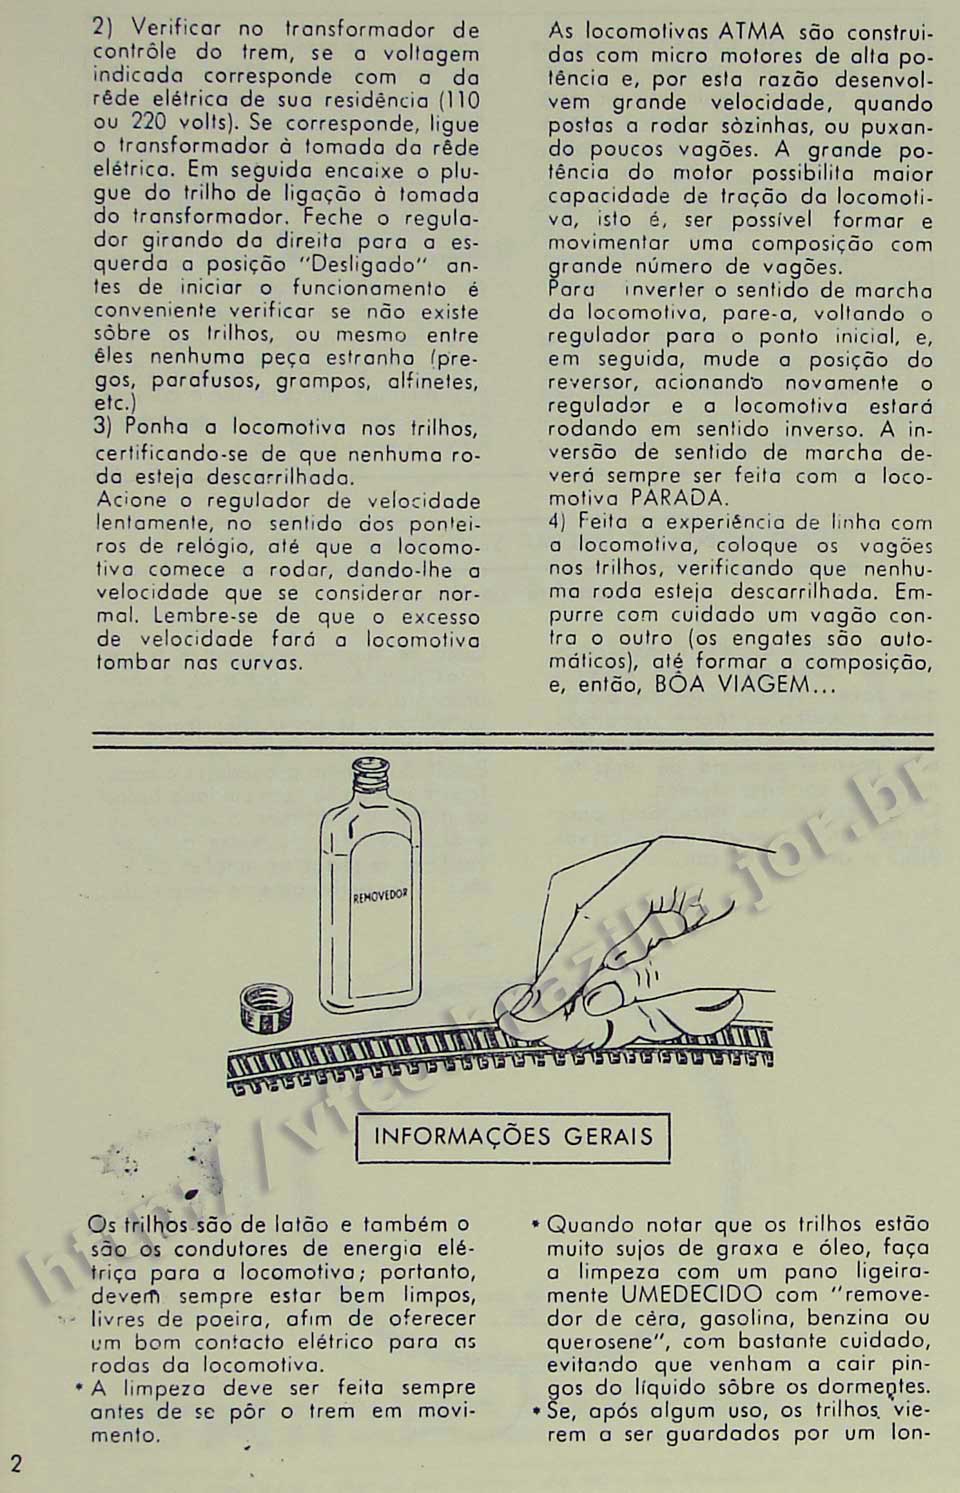 Cuidados básicos com as locomotivas e a limpeza dos trilhos, na Página 2 do manual "Como montar e operar seu trem elétrico Atma" para maquete de ferreomodelismo